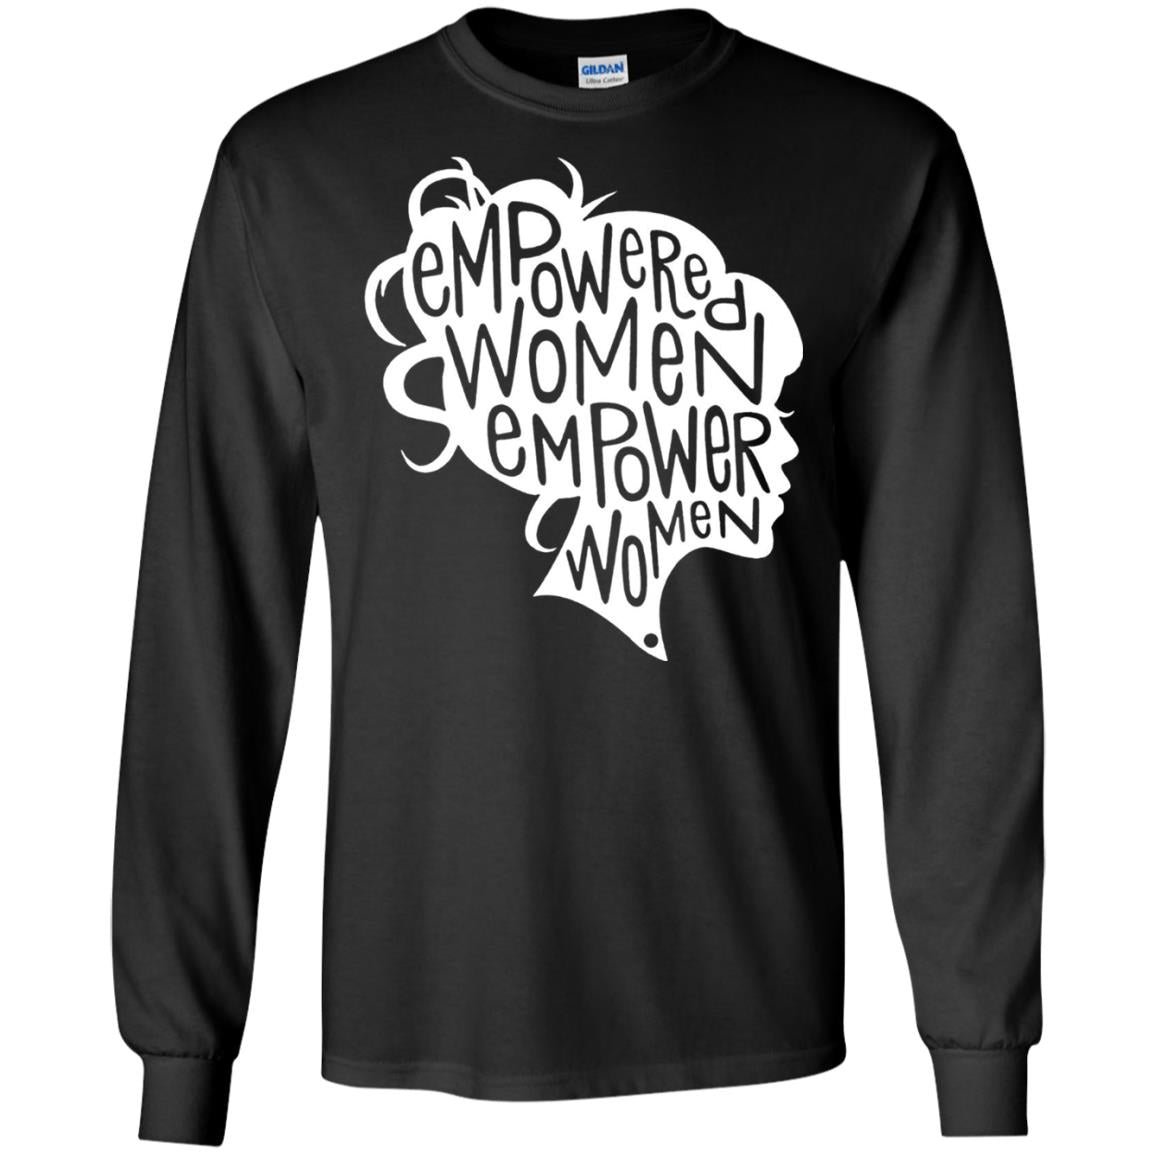 Women_s Right T-shirt Feminist Empowered Women March Hot 2017